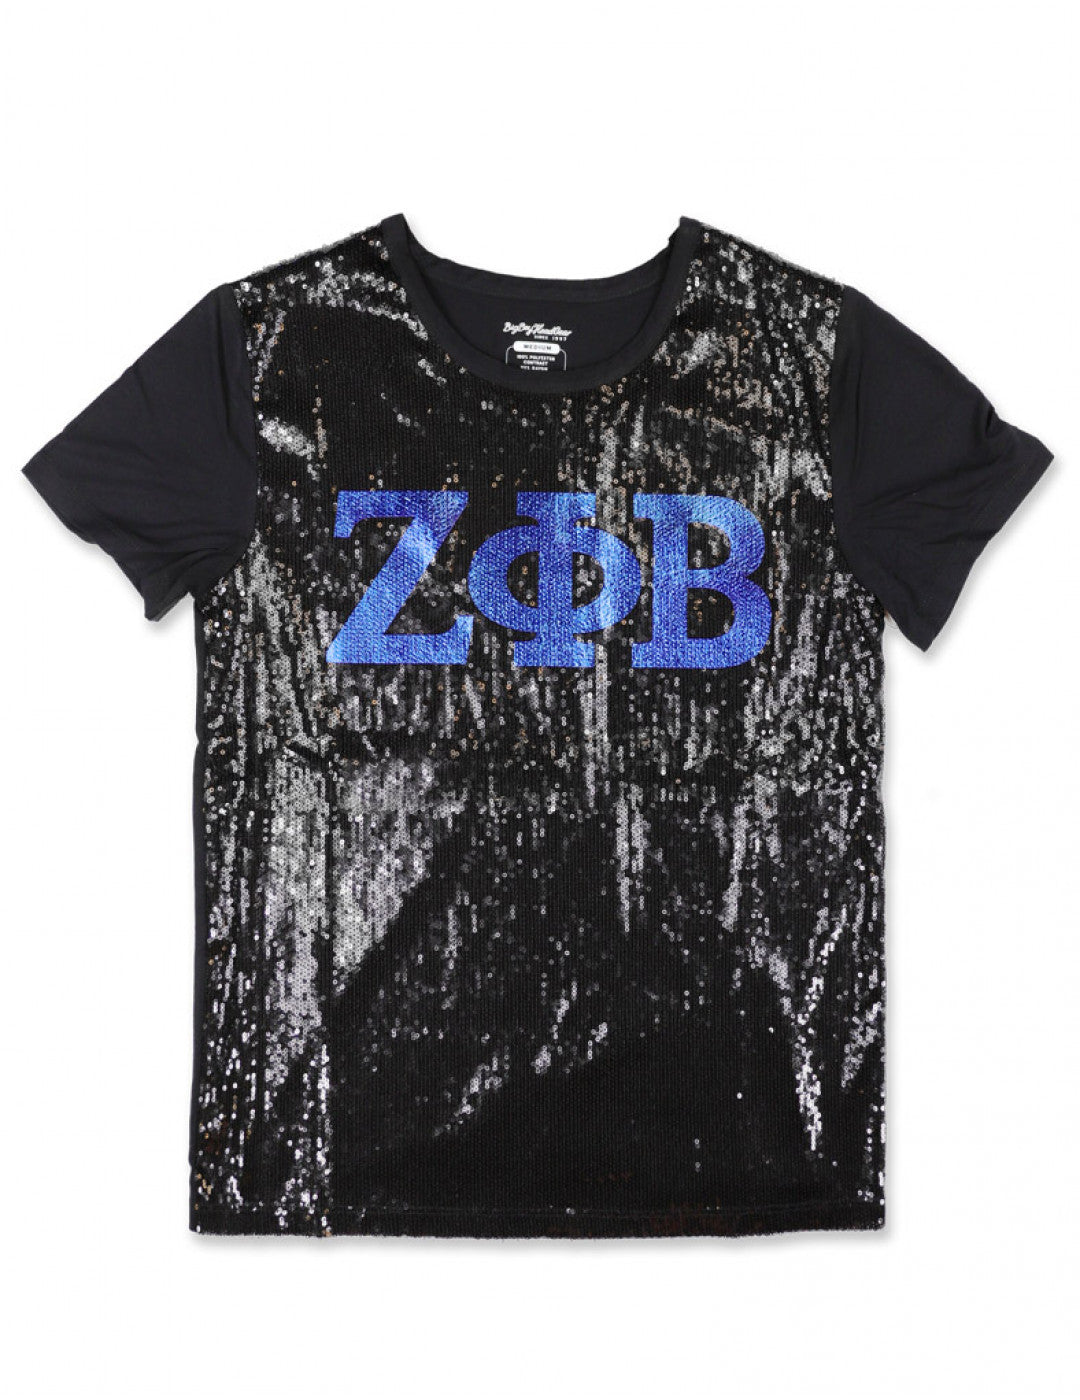 🔥New Zeta Sequin Shirt